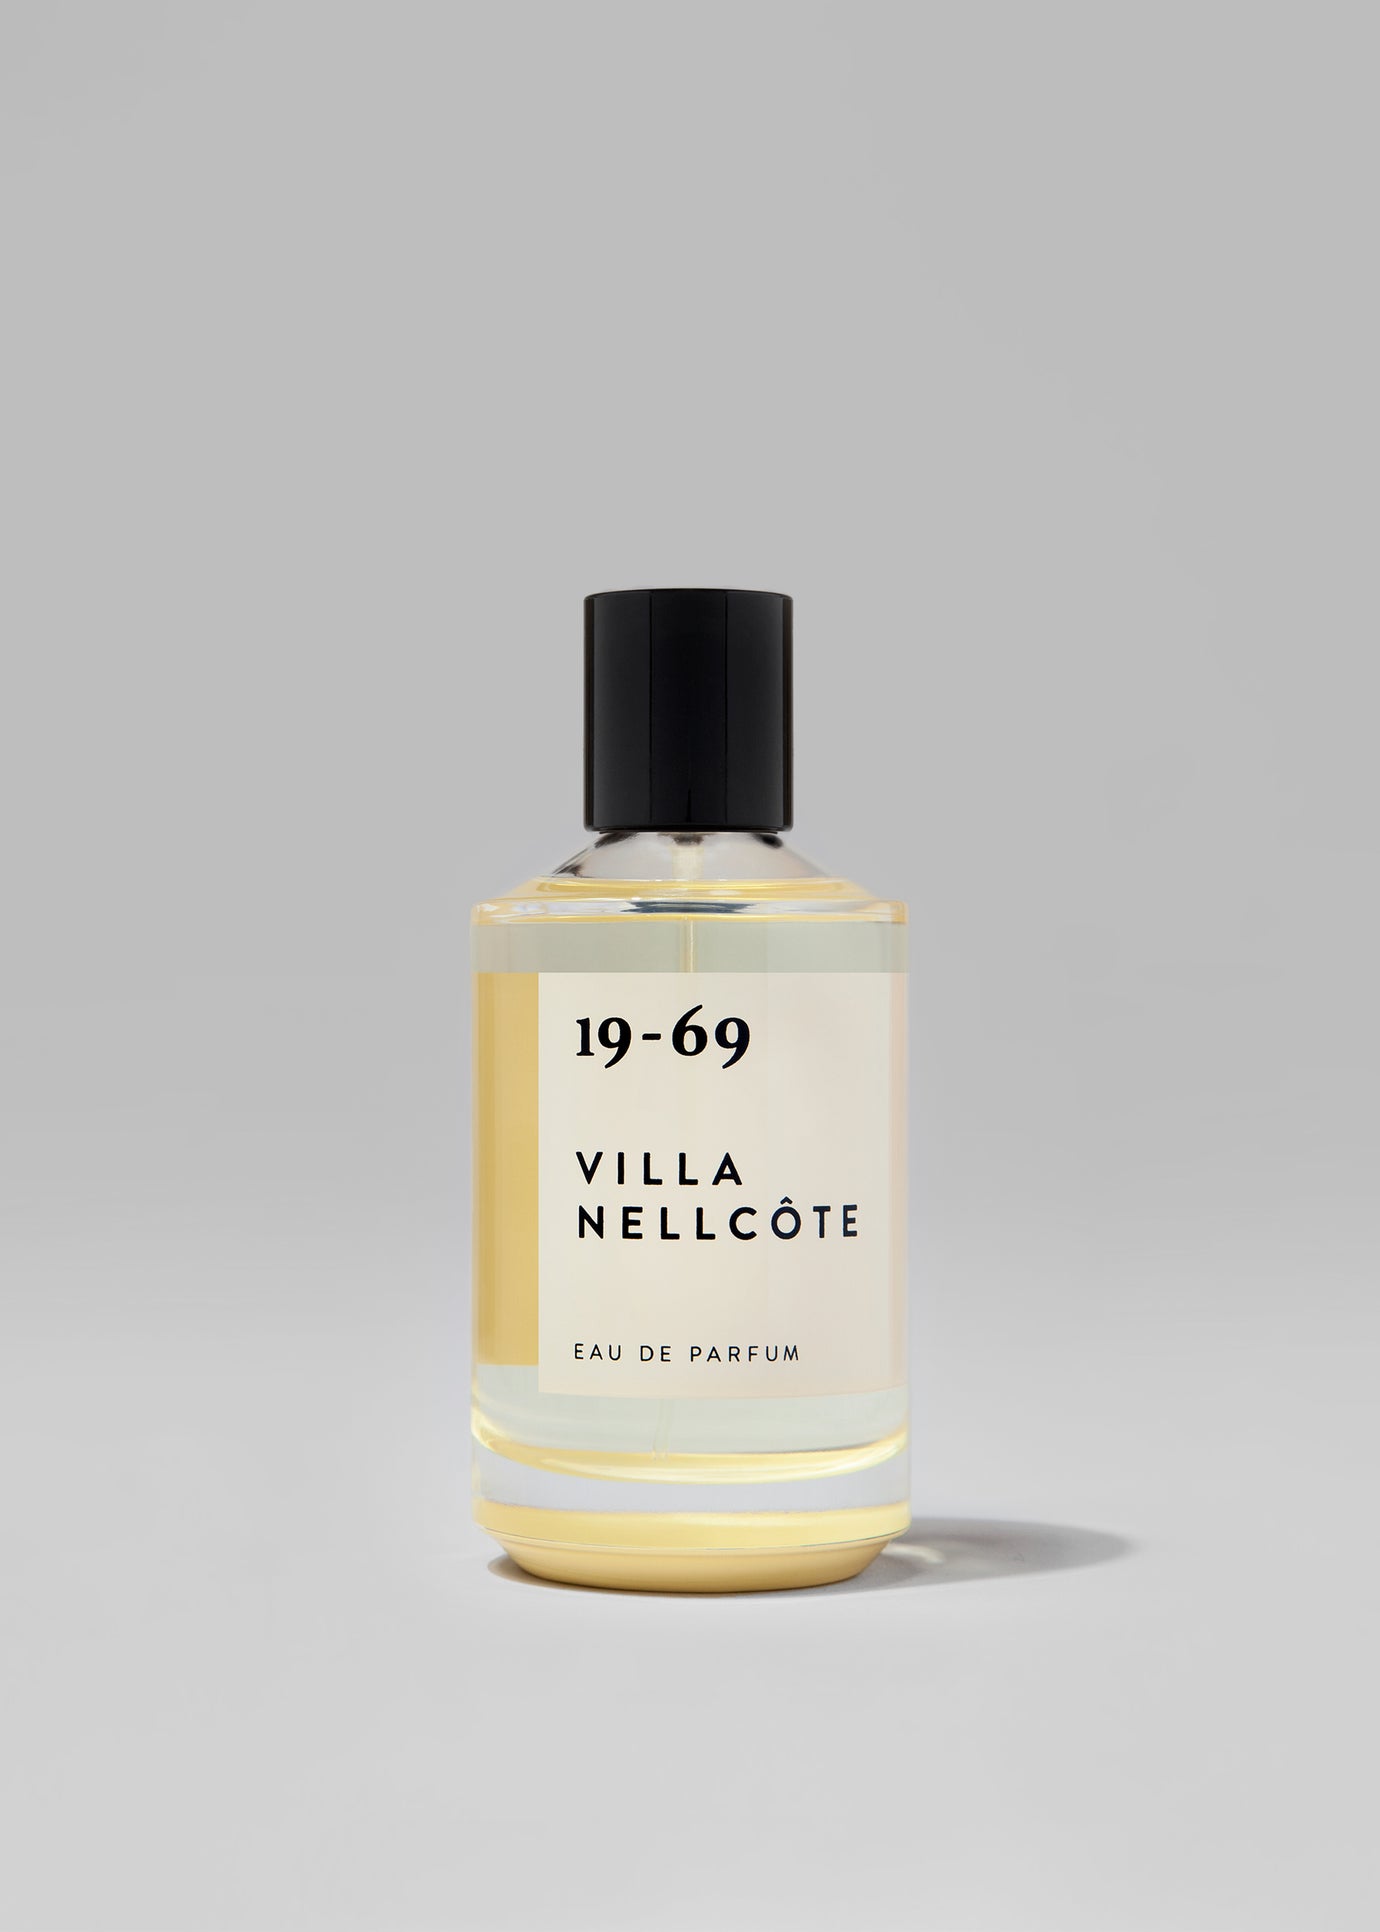 19-69 Villa Nellcôte Eau de Parfum